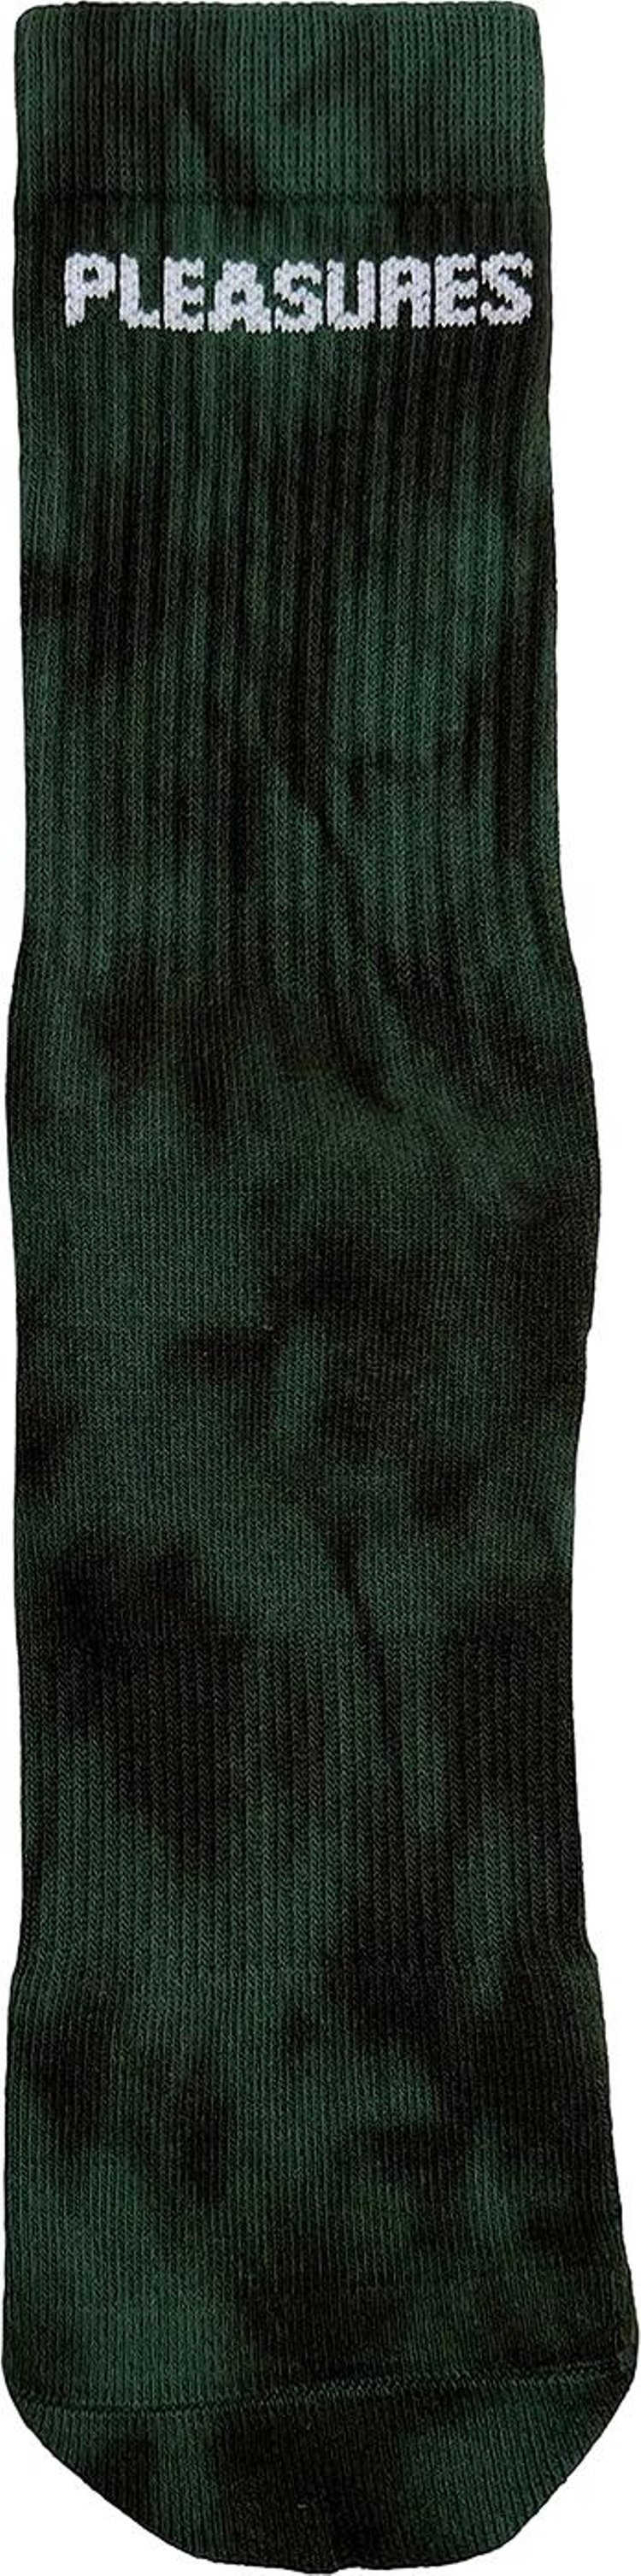 Носки Pleasures Indie Dye 'Hunter', зеленый